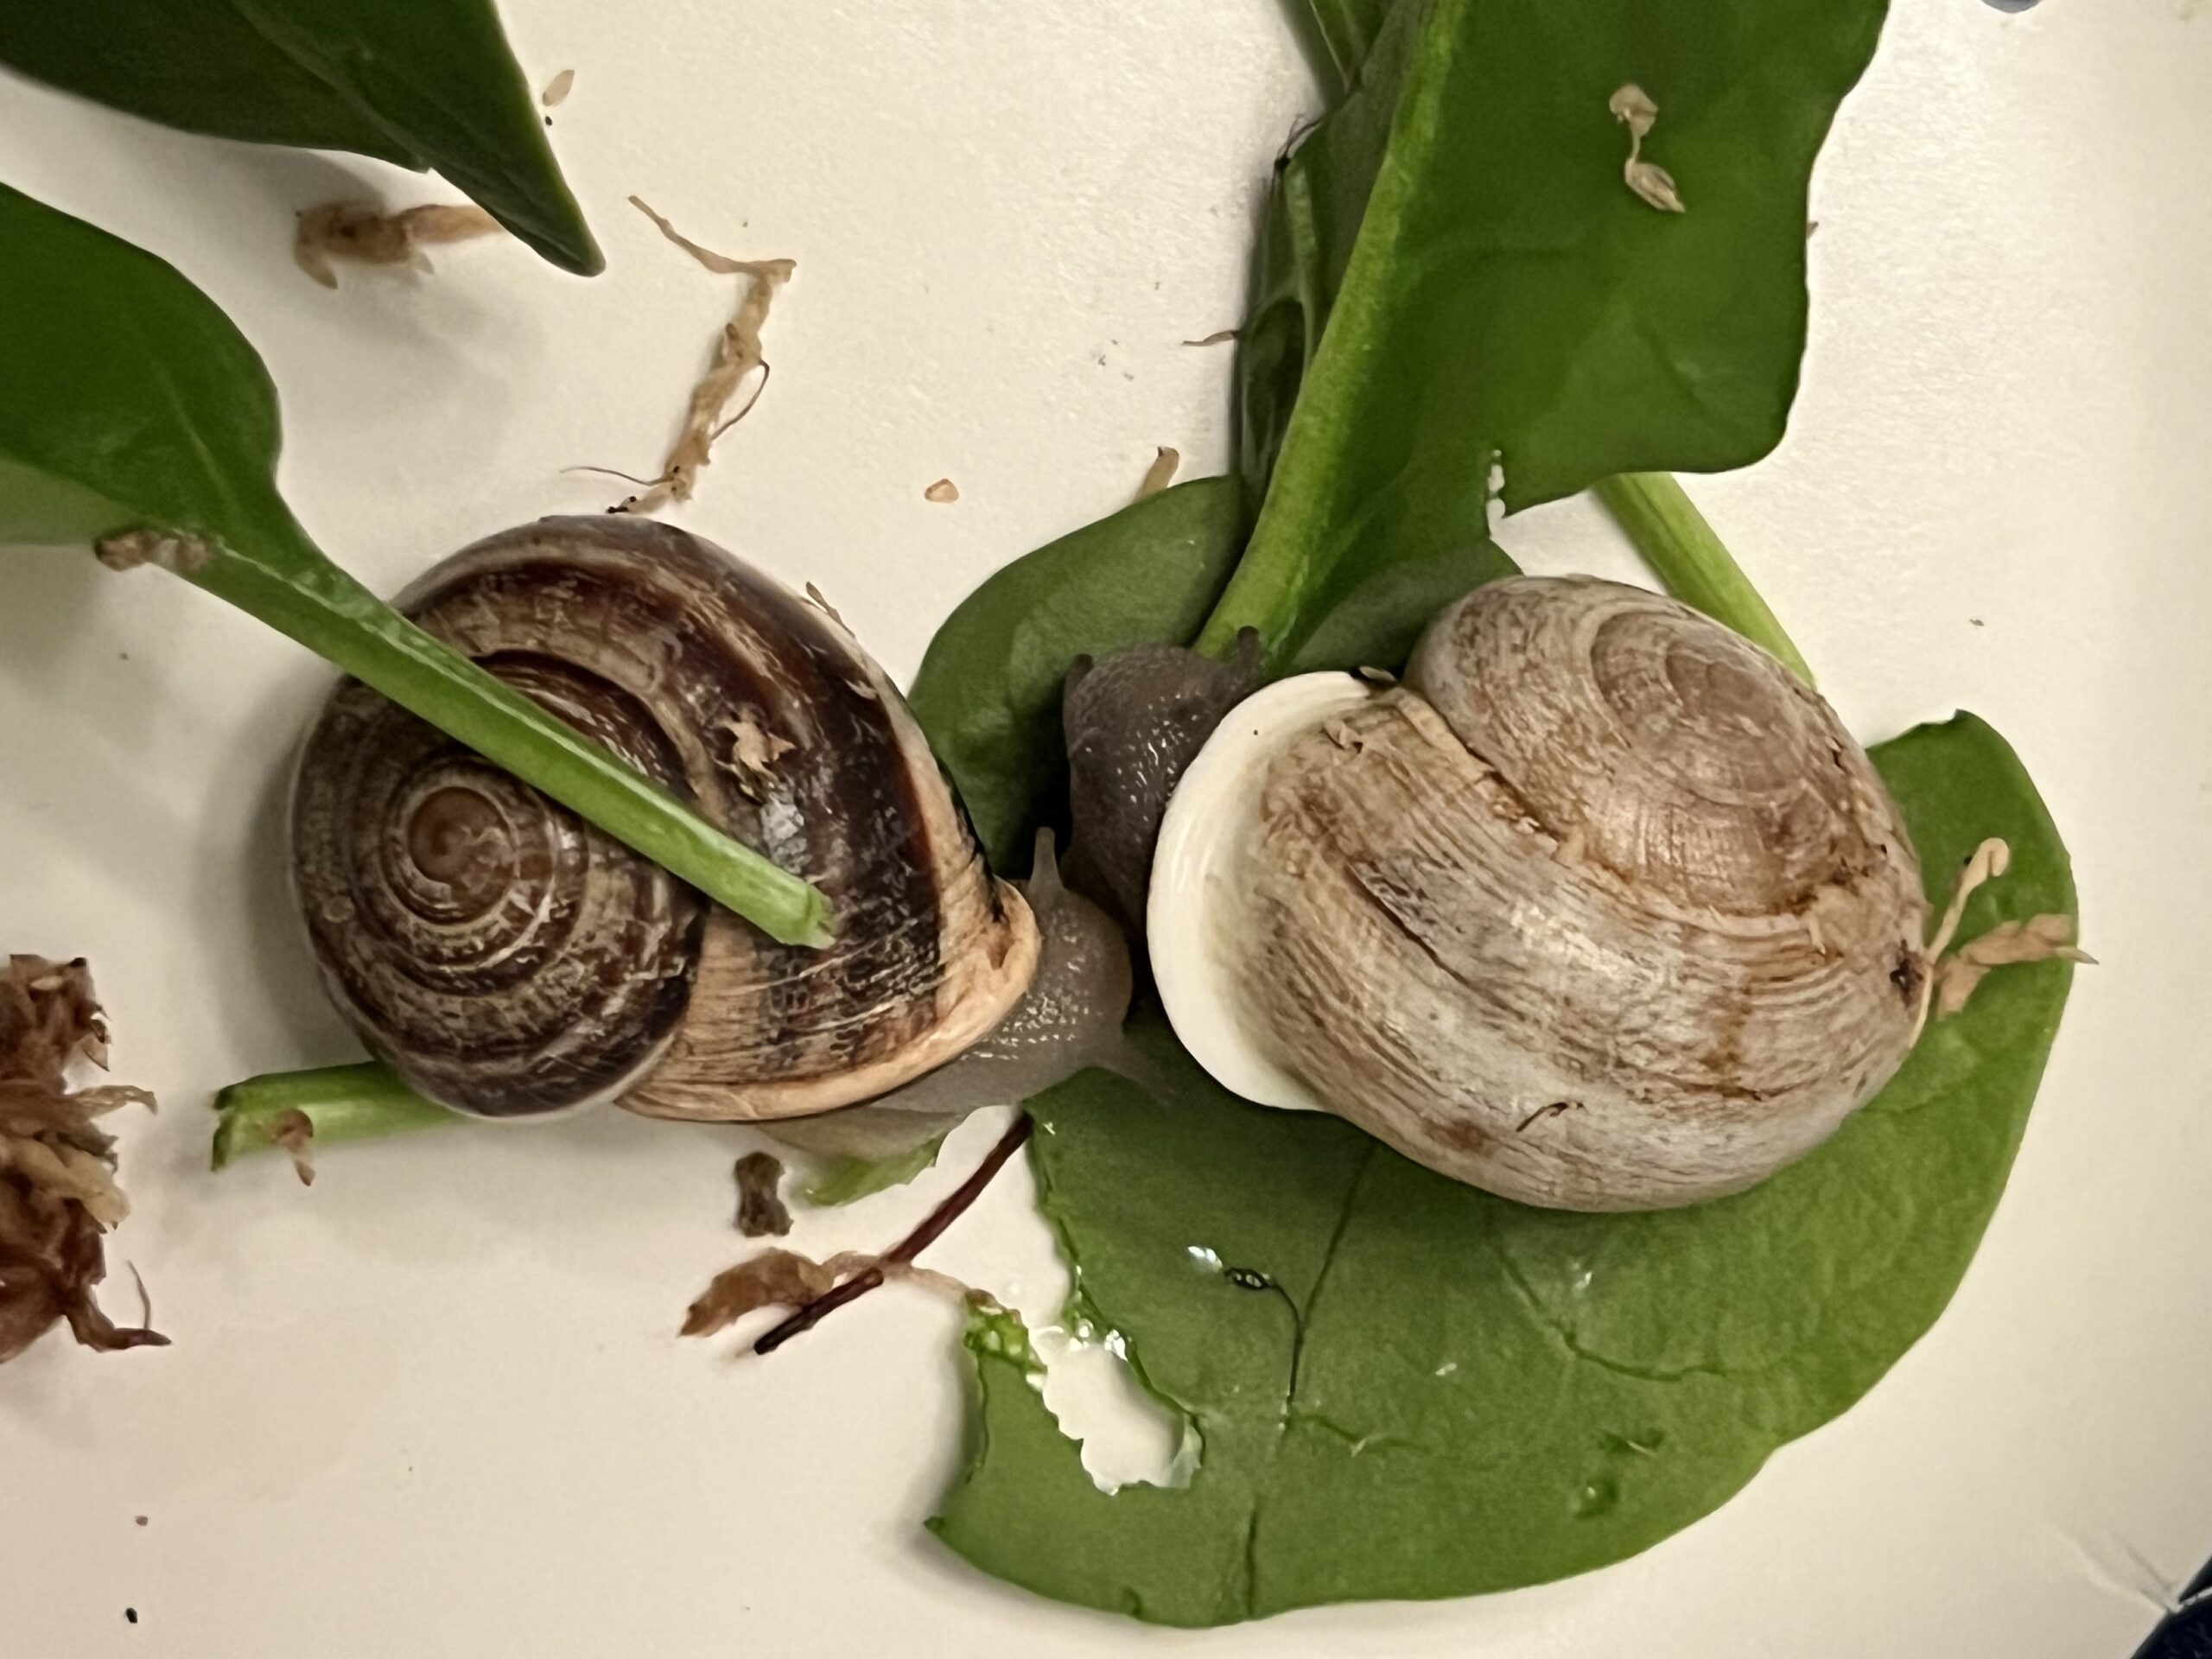 Let’s Talk About Snail Sex